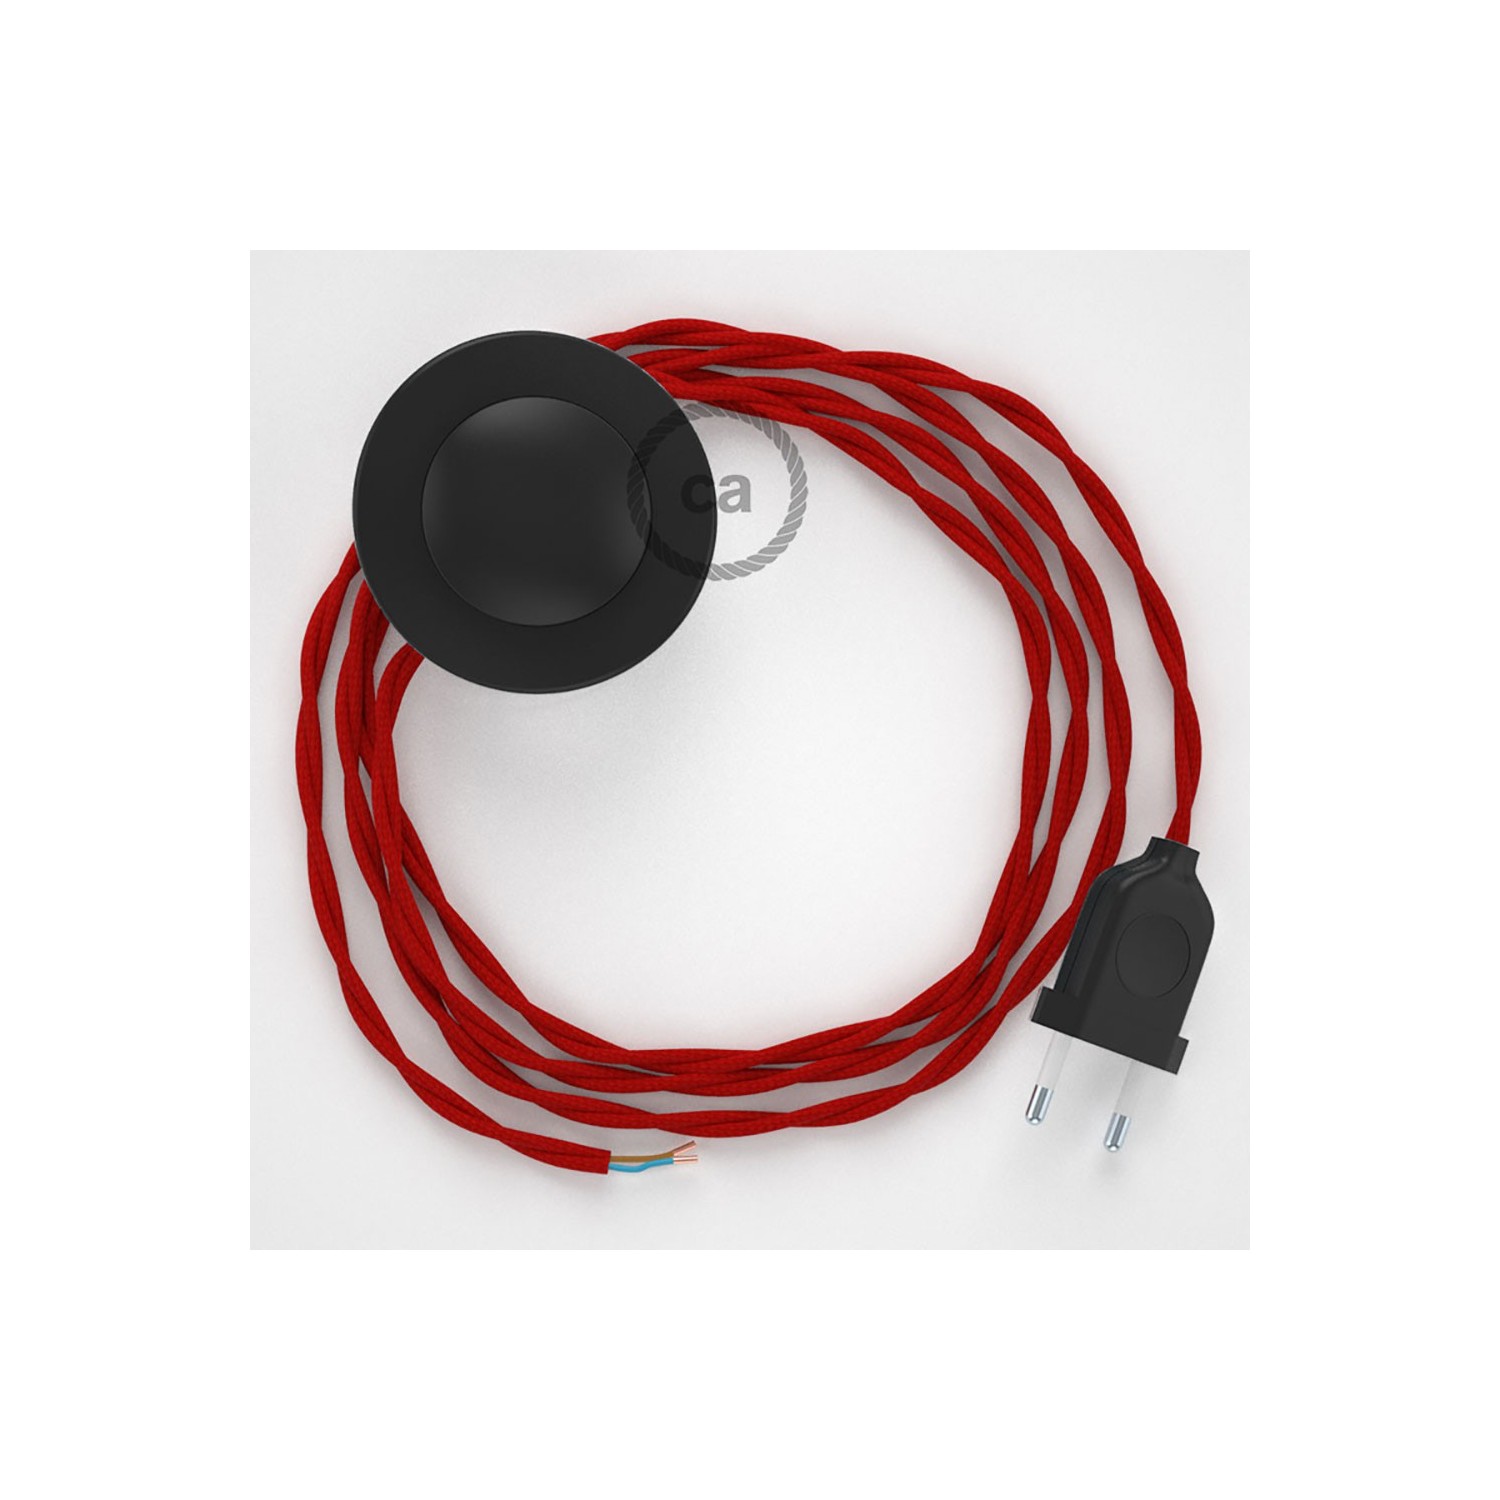 Sladdställ med fotströmbrytare, TM09 Röd Viskos 3 m. Välj färg på strömbrytare och kontakt